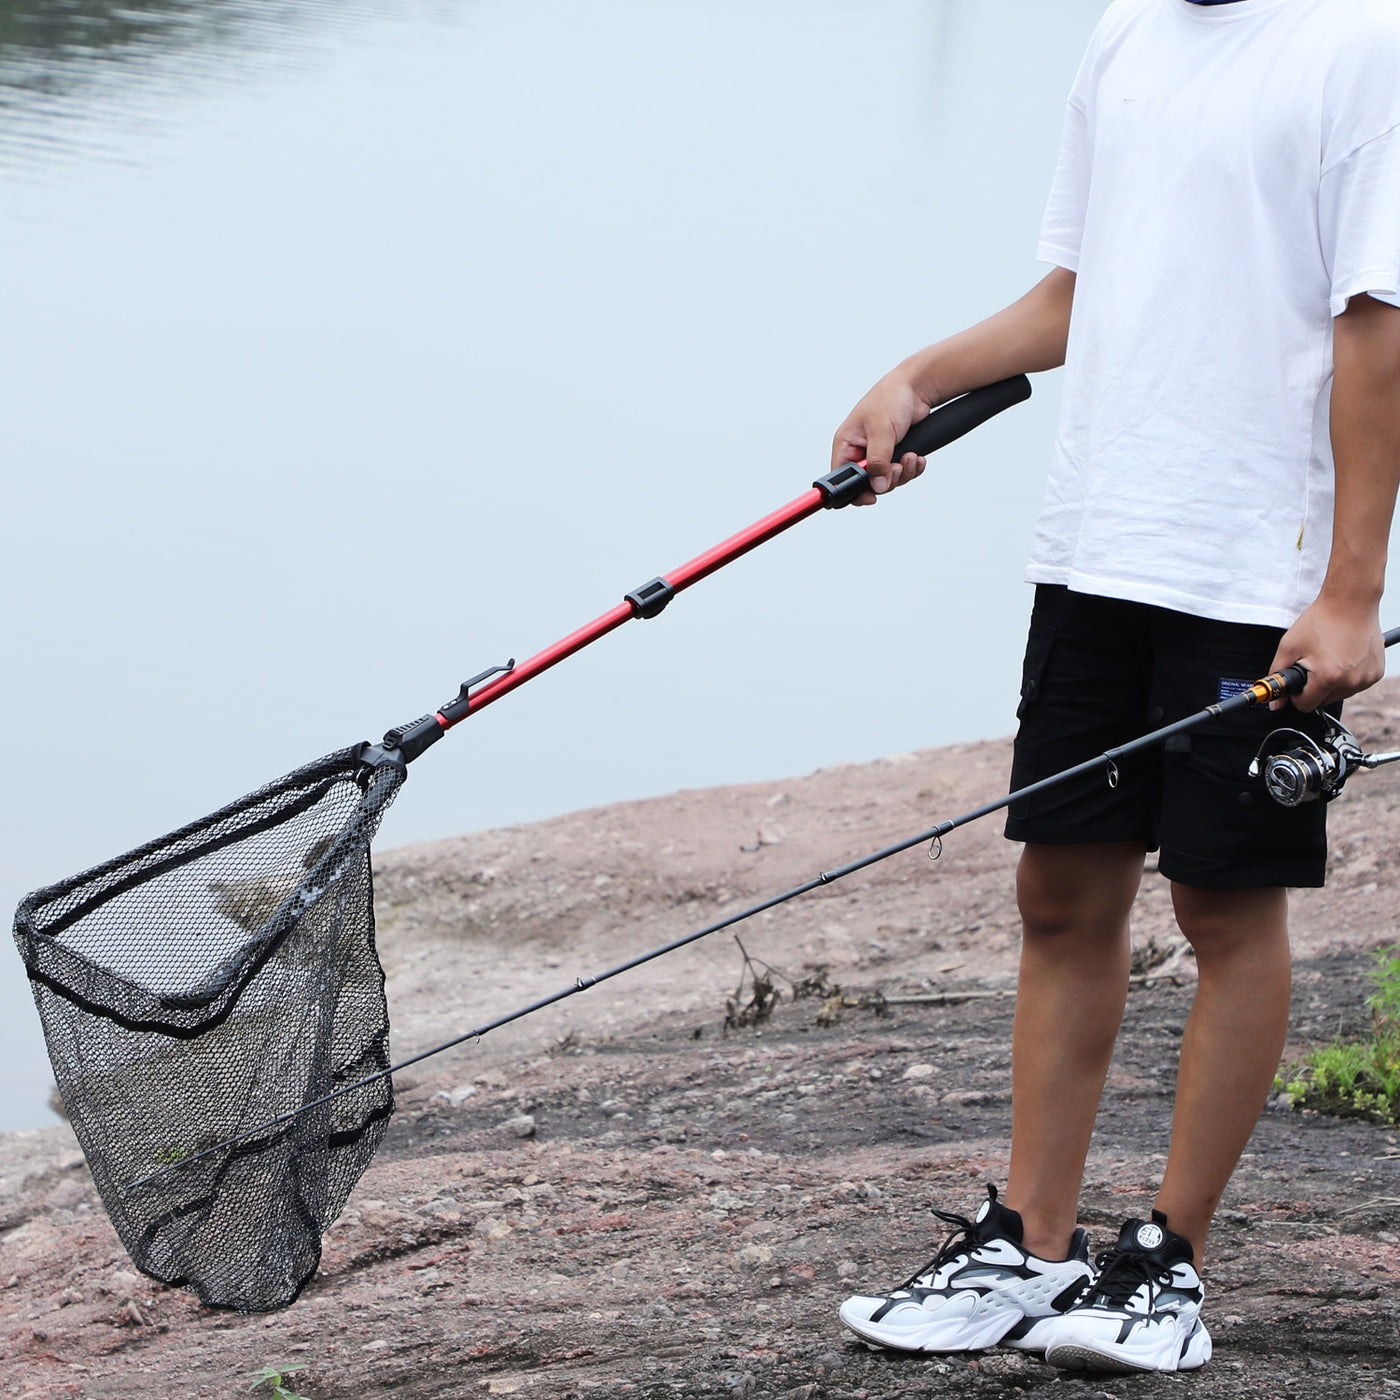 FISHING SCOOP
70/95/112cm Retractable Fishing Net